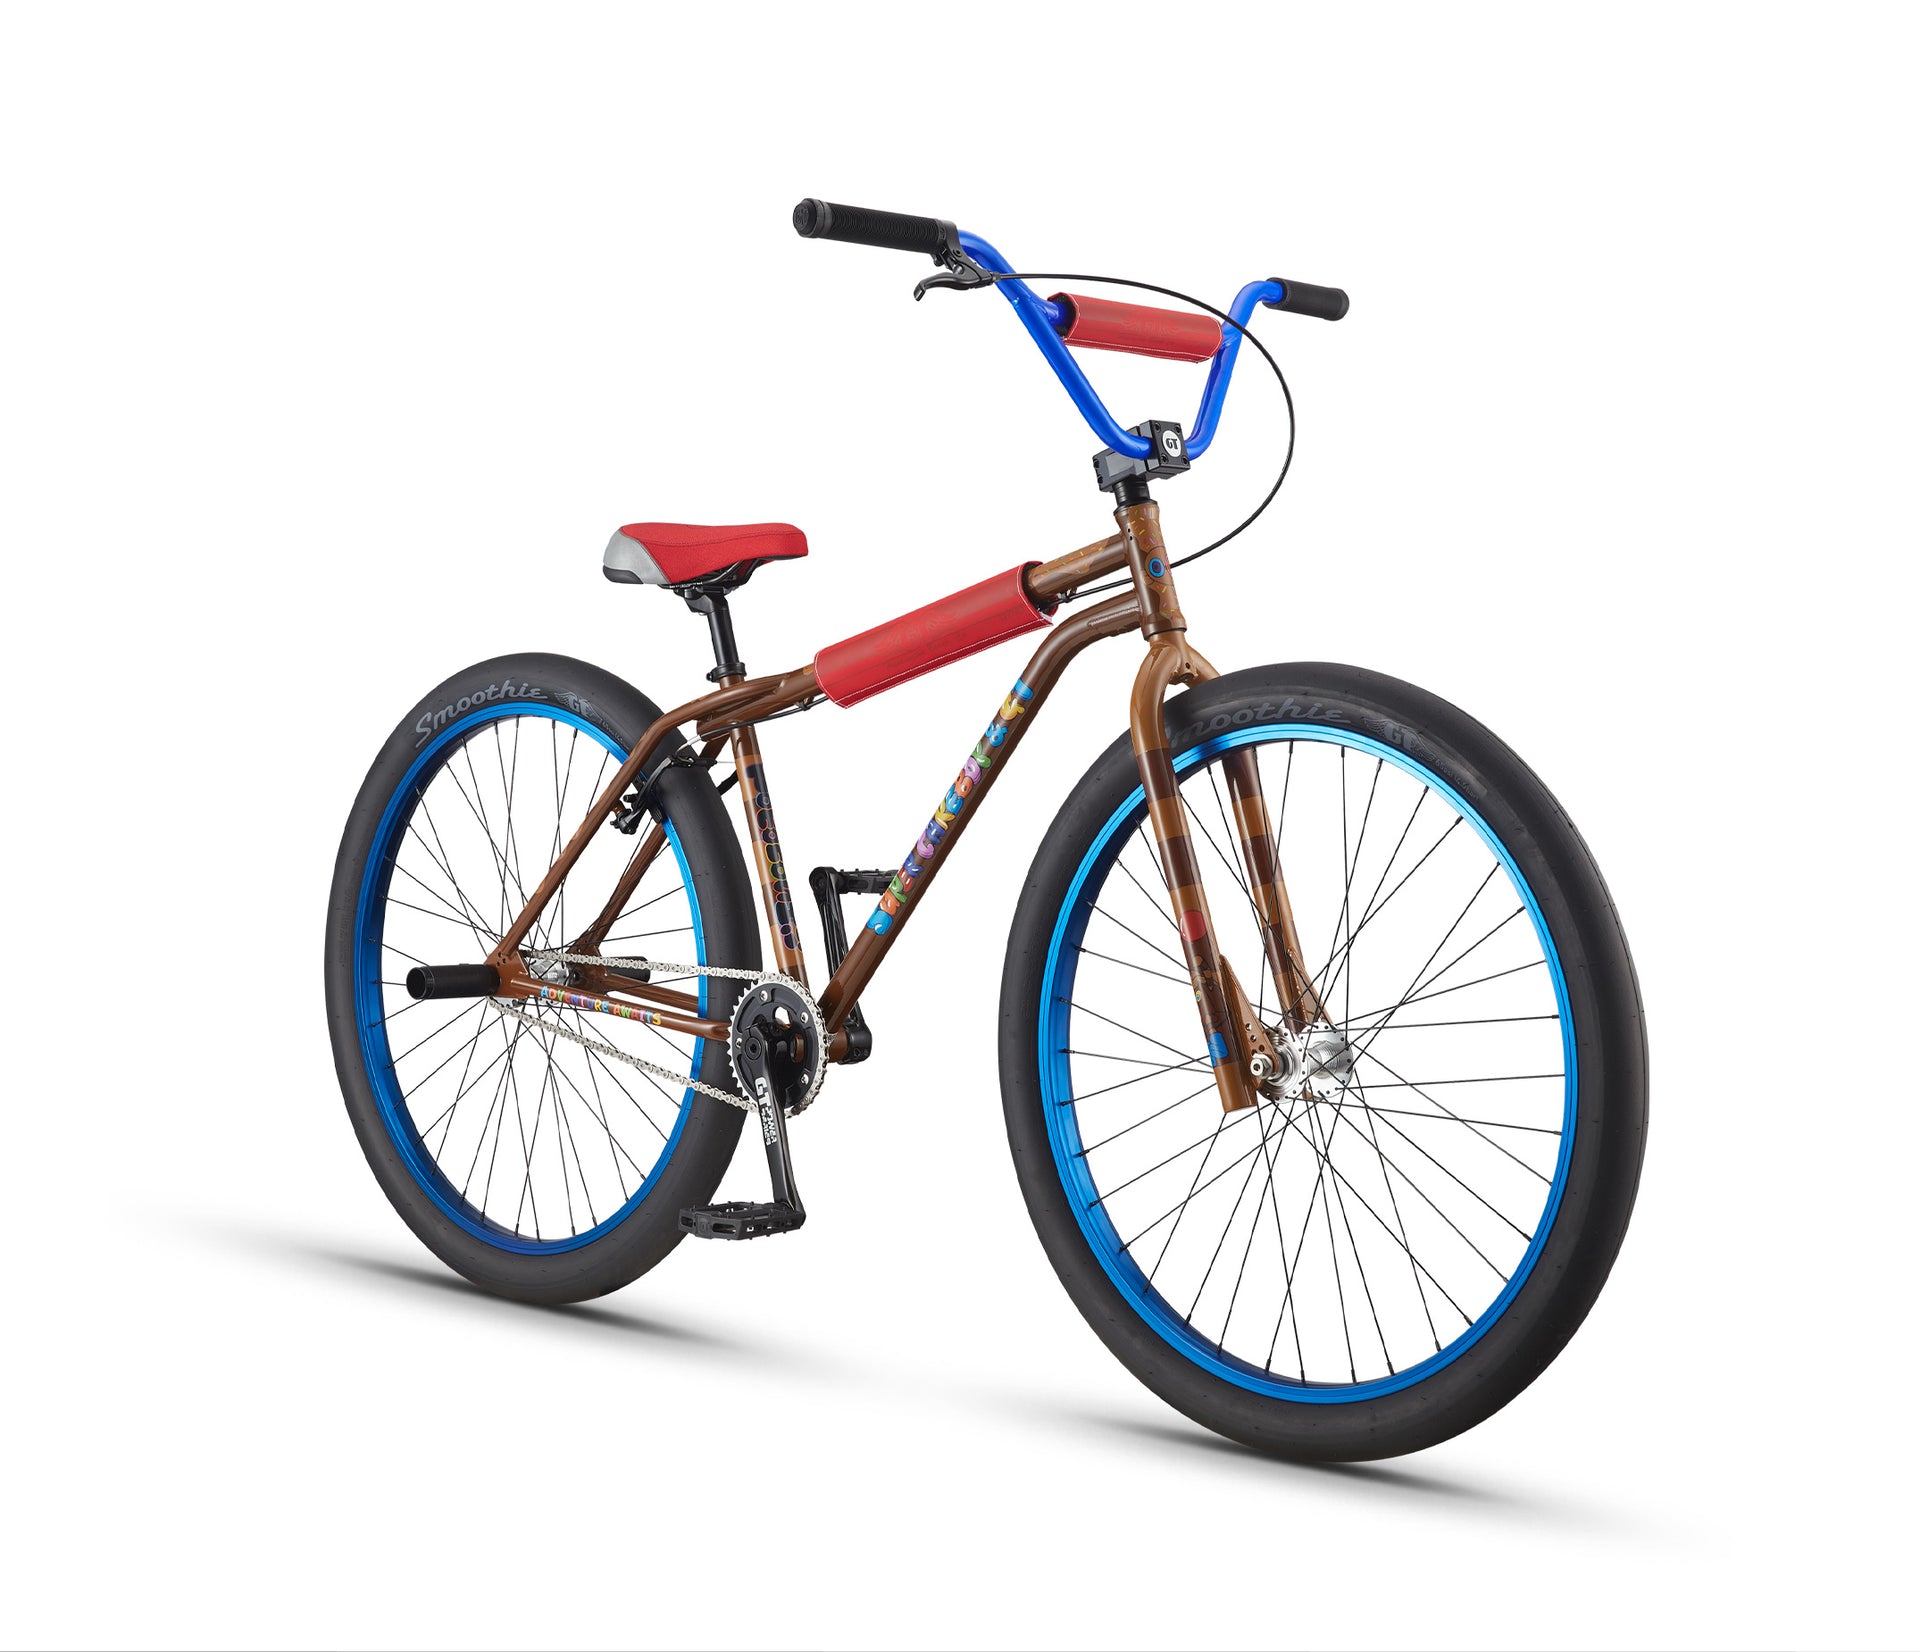 VINTAGE- BIKE STUFF - bicycle parts - by owner - bike sale - craigslist